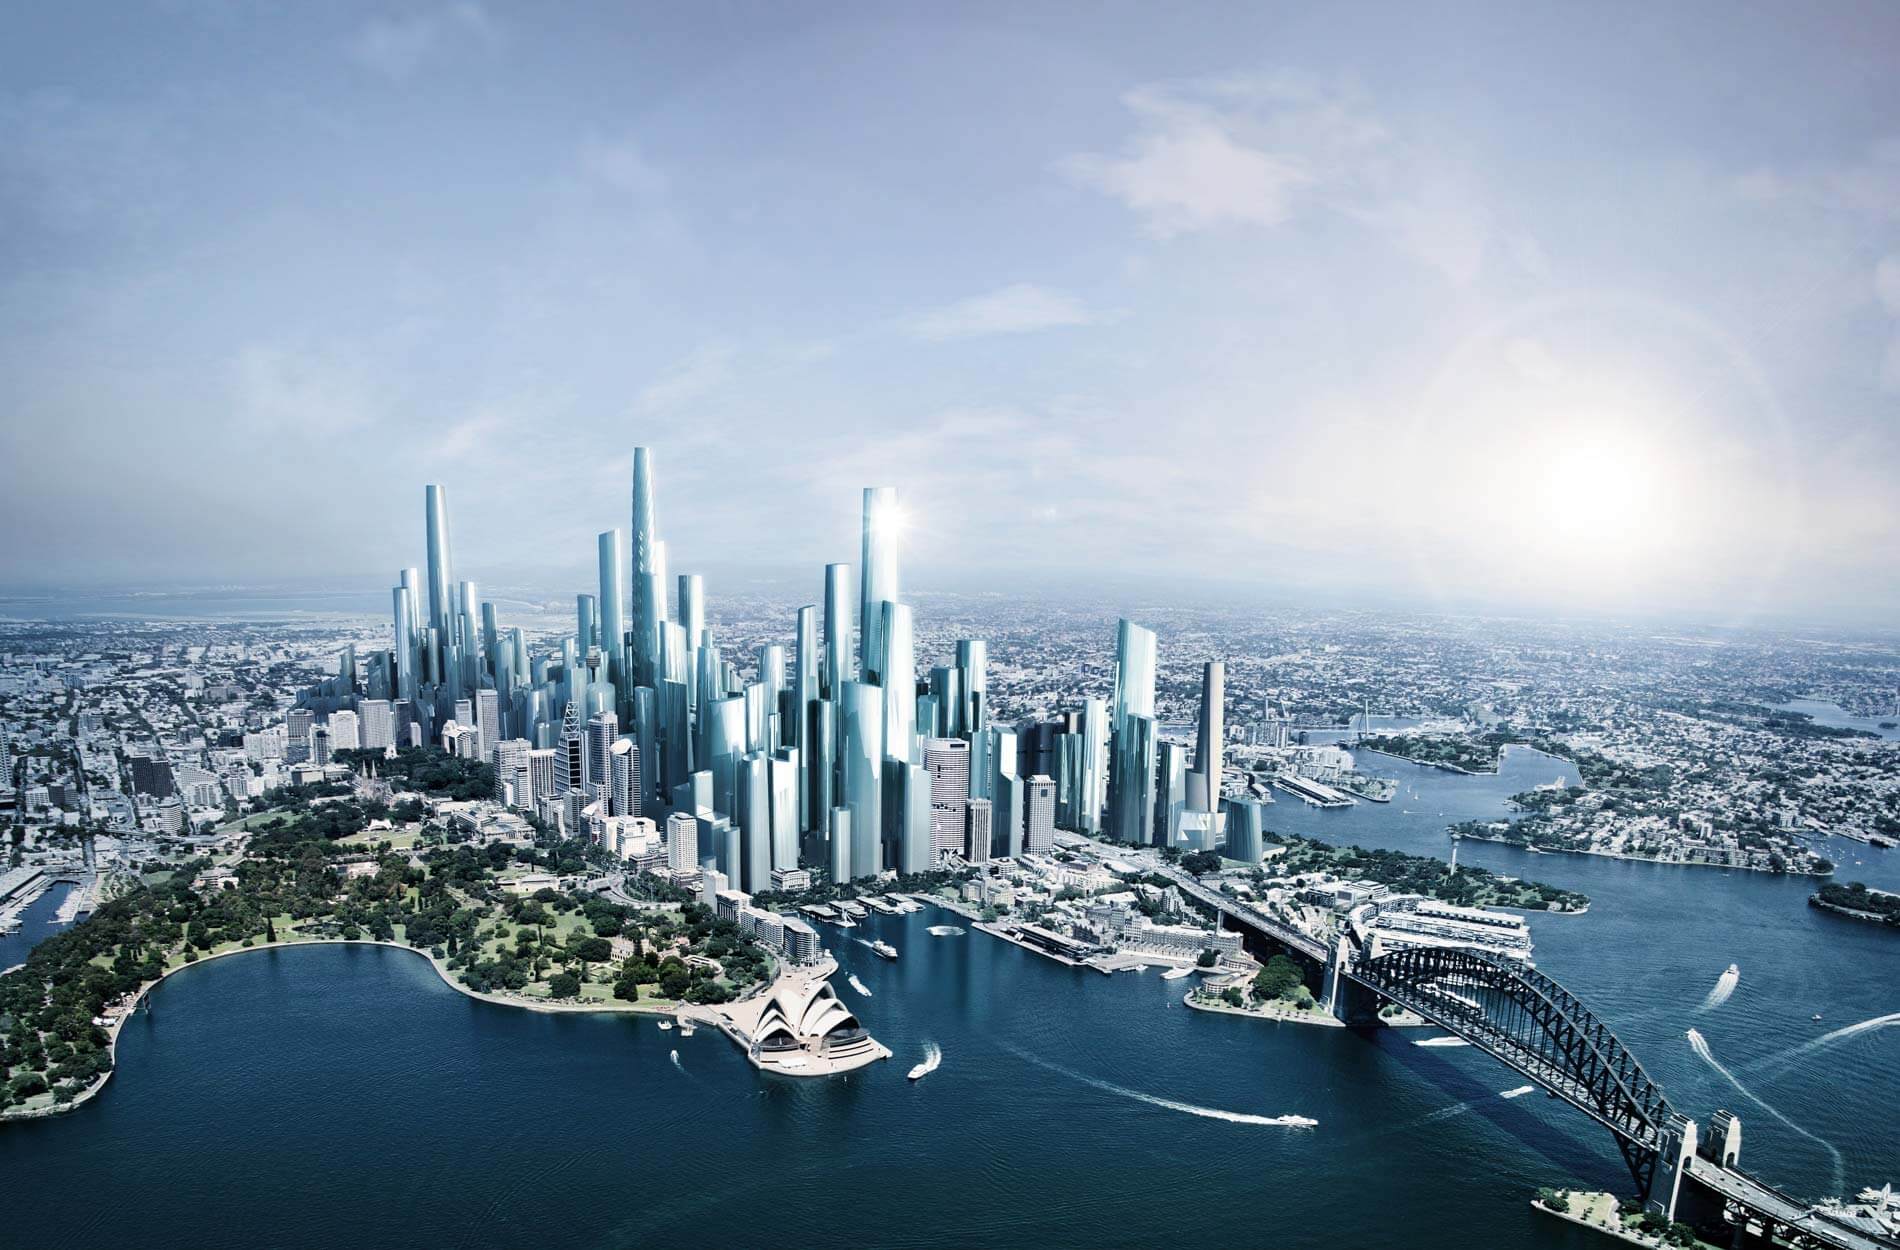 Sydney’s skyline by 2050